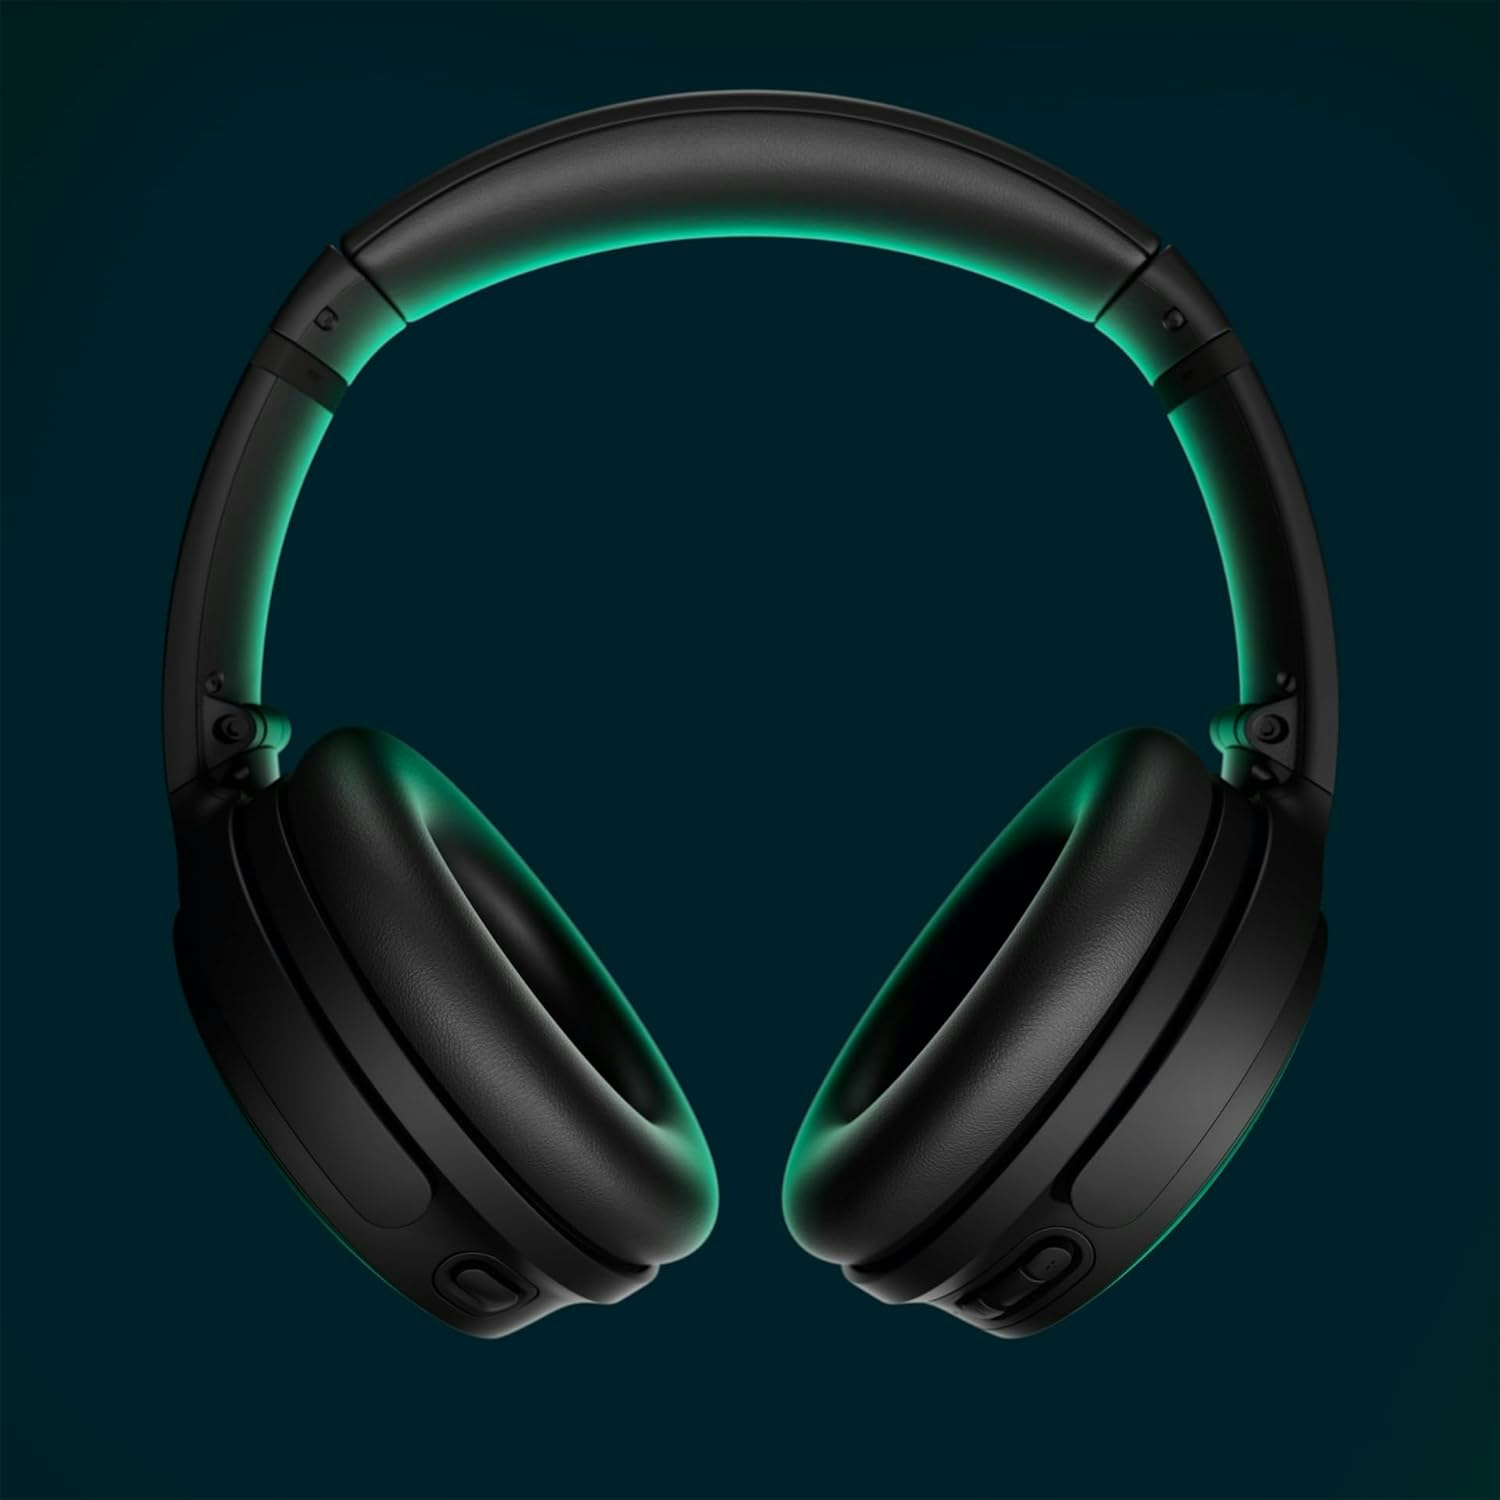 Bose QuietComfort trådlösa over-ear hörlurar svart